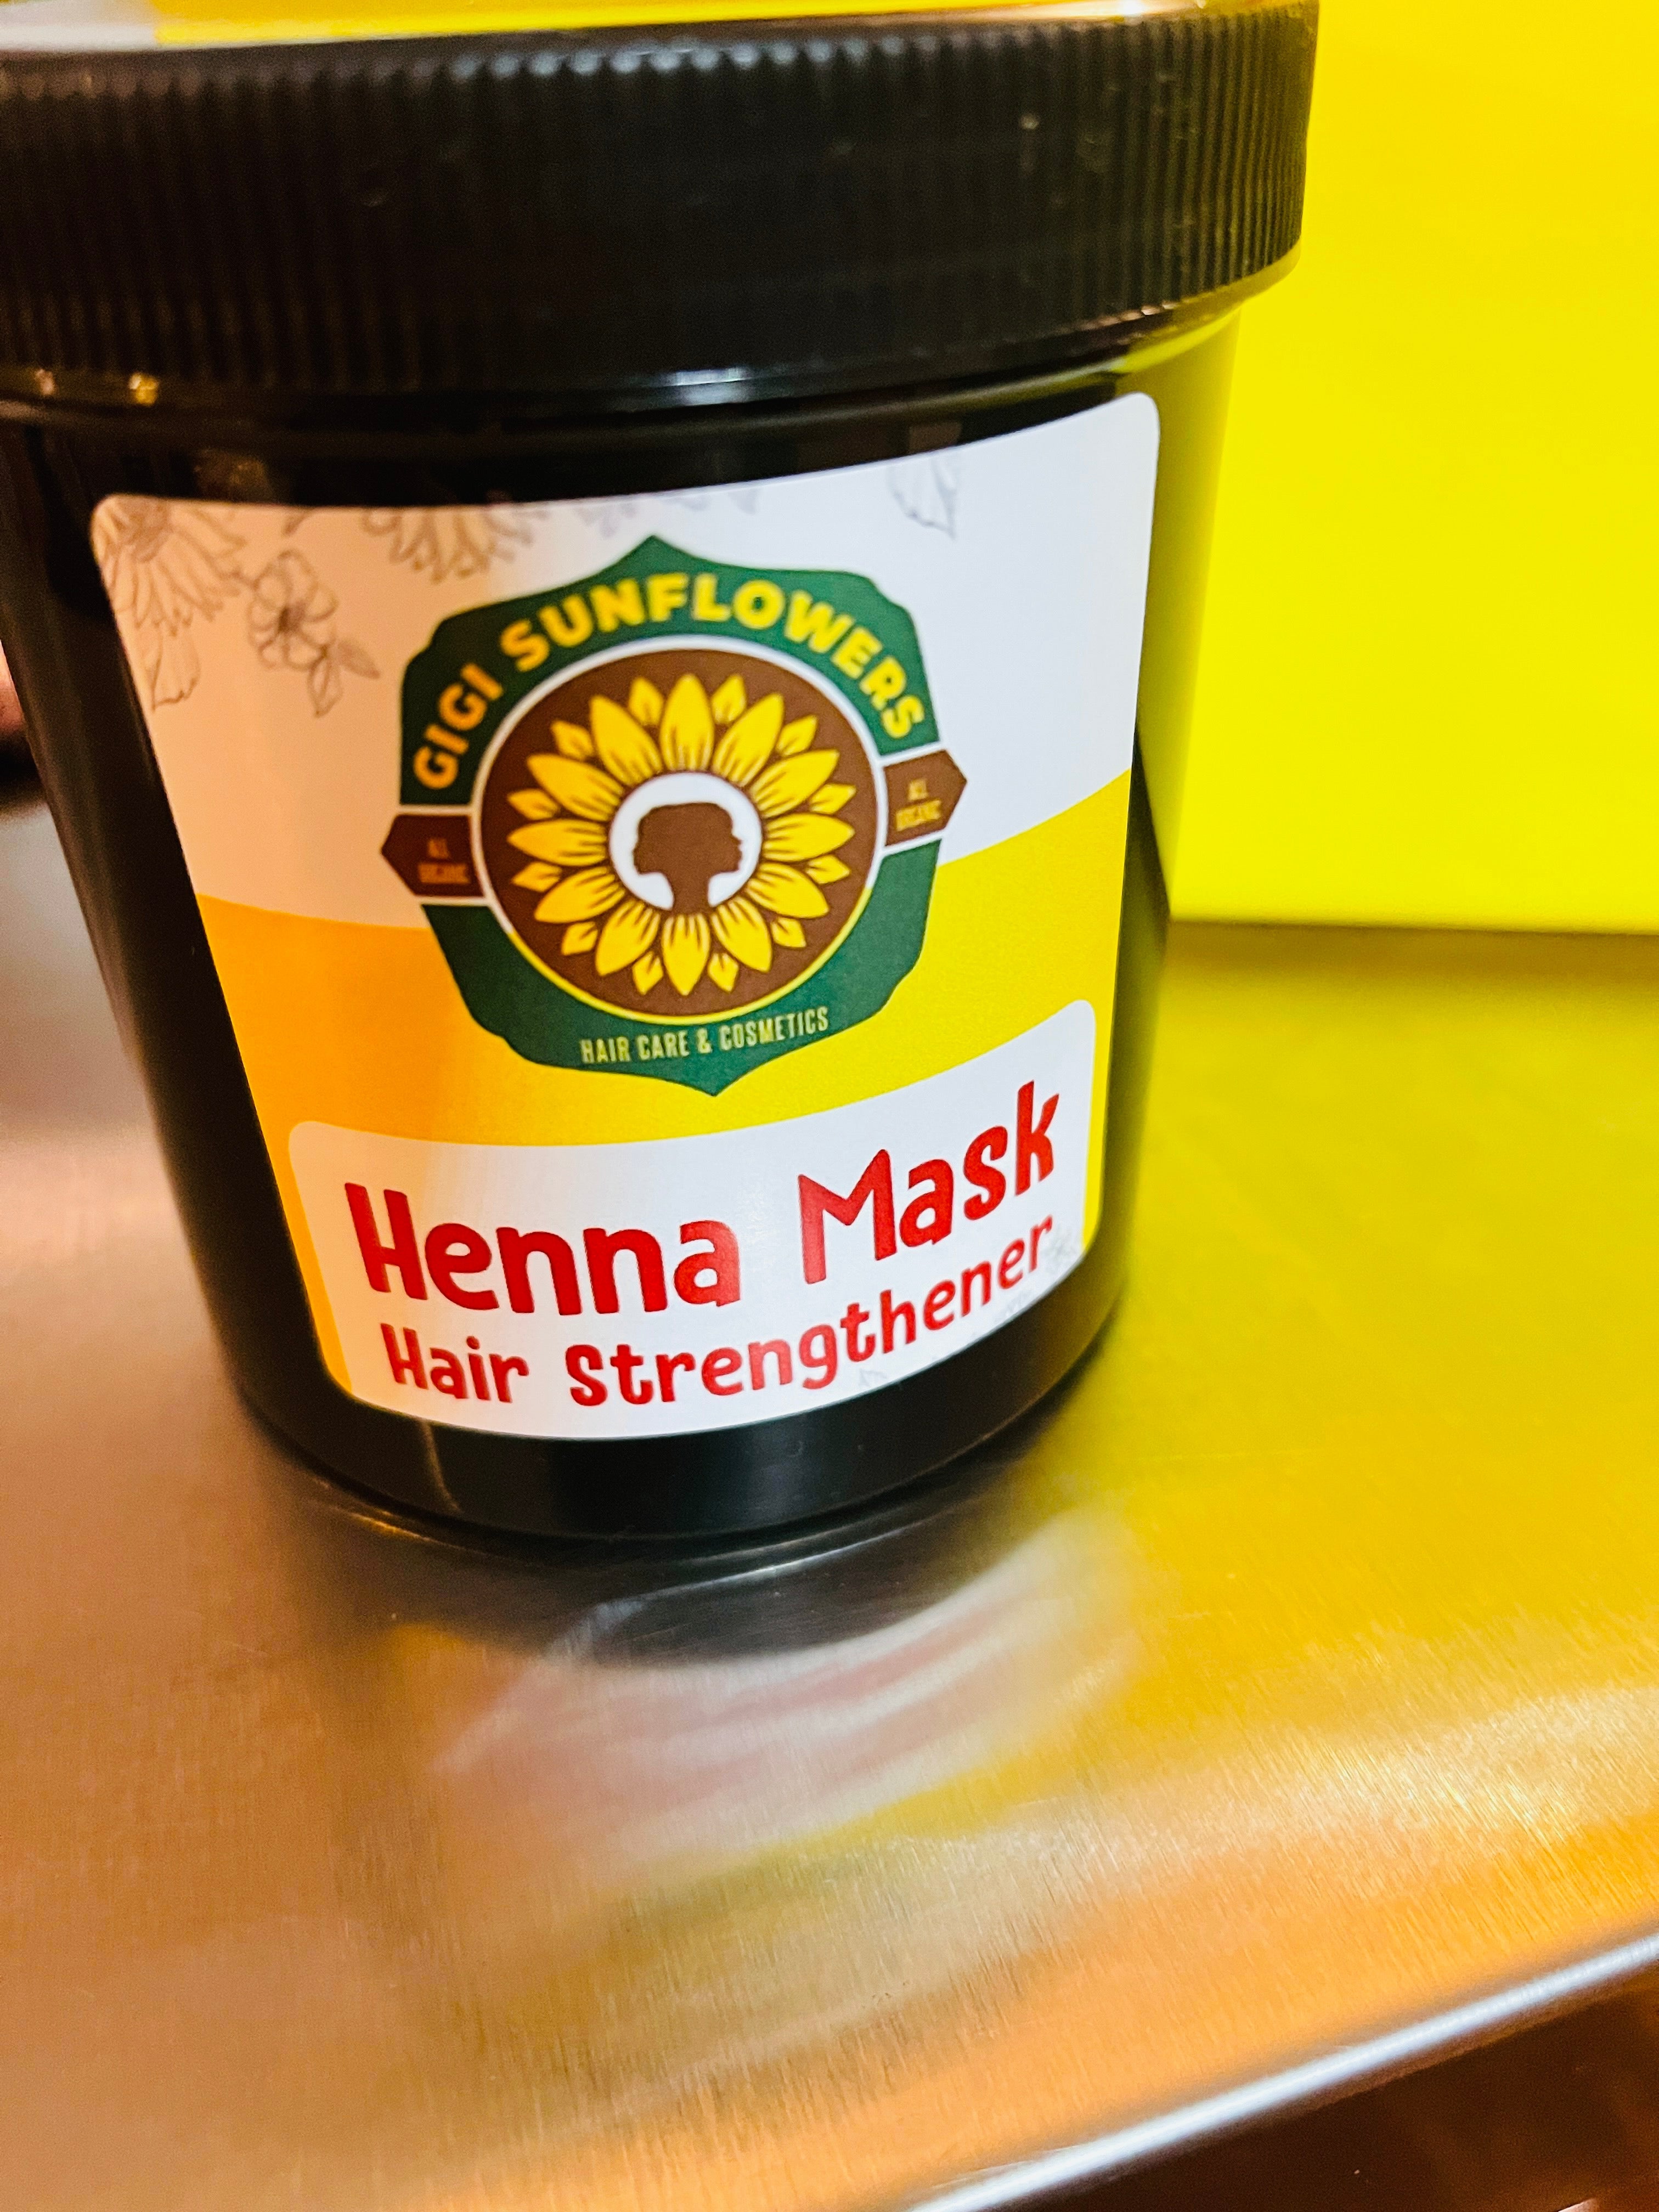 4oz Henna Mask Hair Strengthener